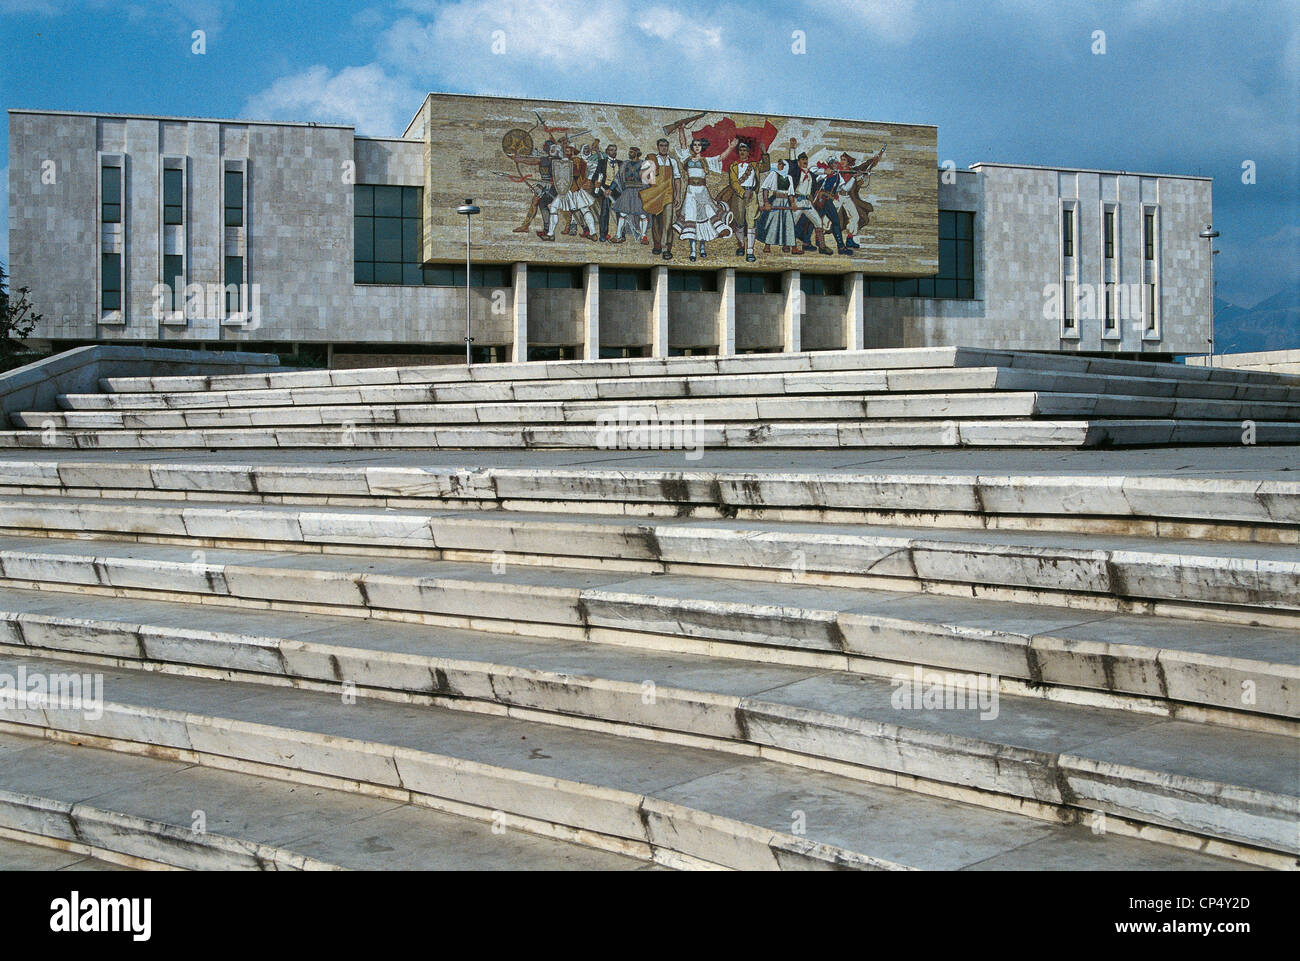 Albania - Tirana. The National History Museum. Stock Photo